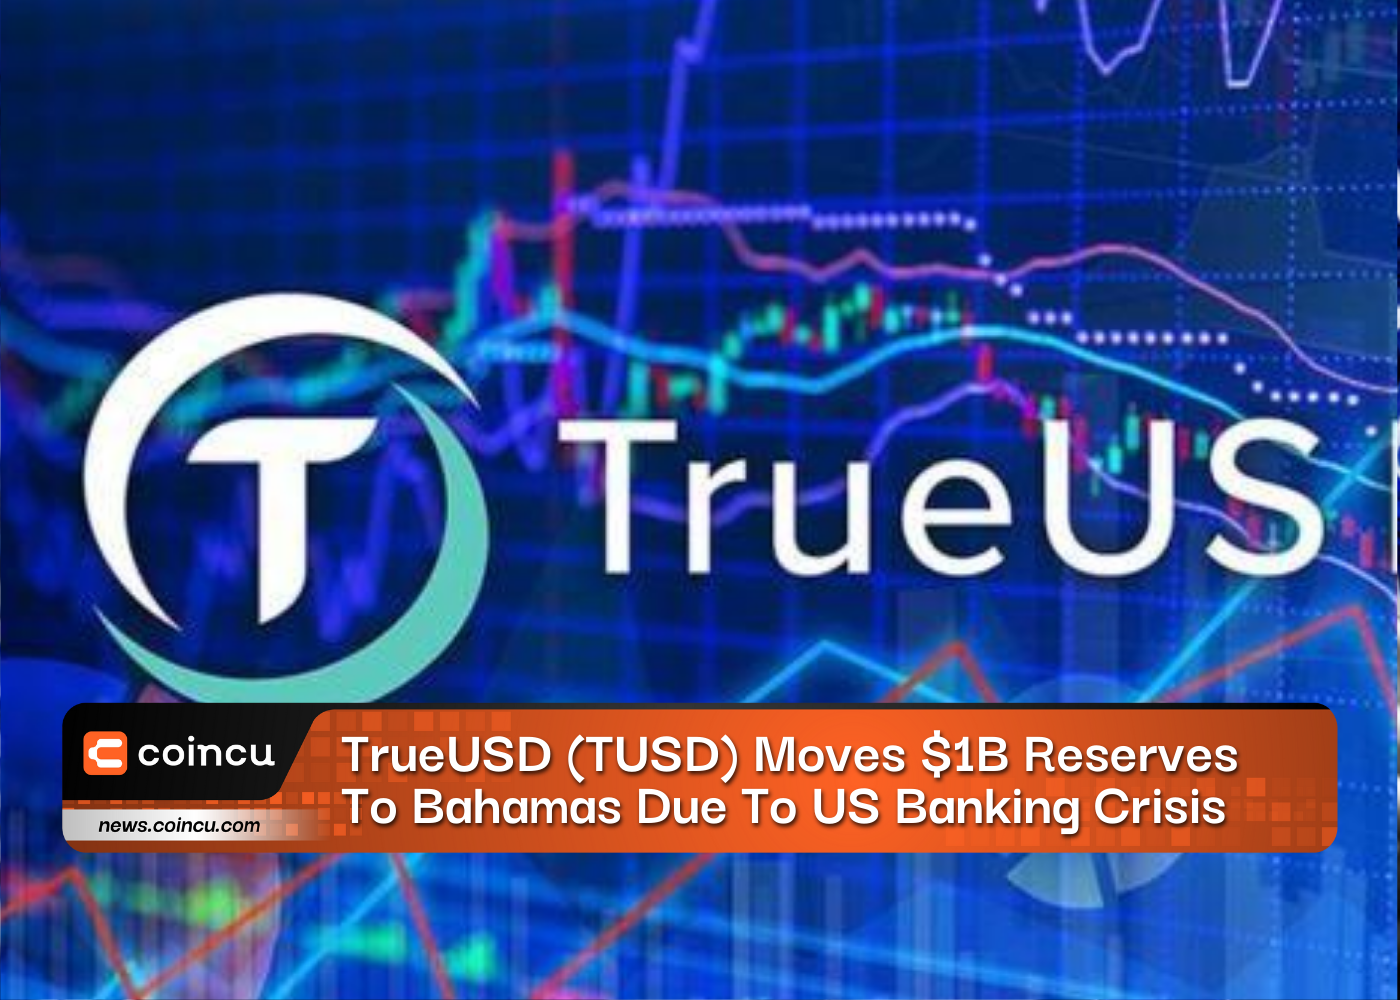 TrueUSD (TUSD) transfère 1 milliard de dollars de réserves vers les Bahamas en raison de la crise bancaire américaine